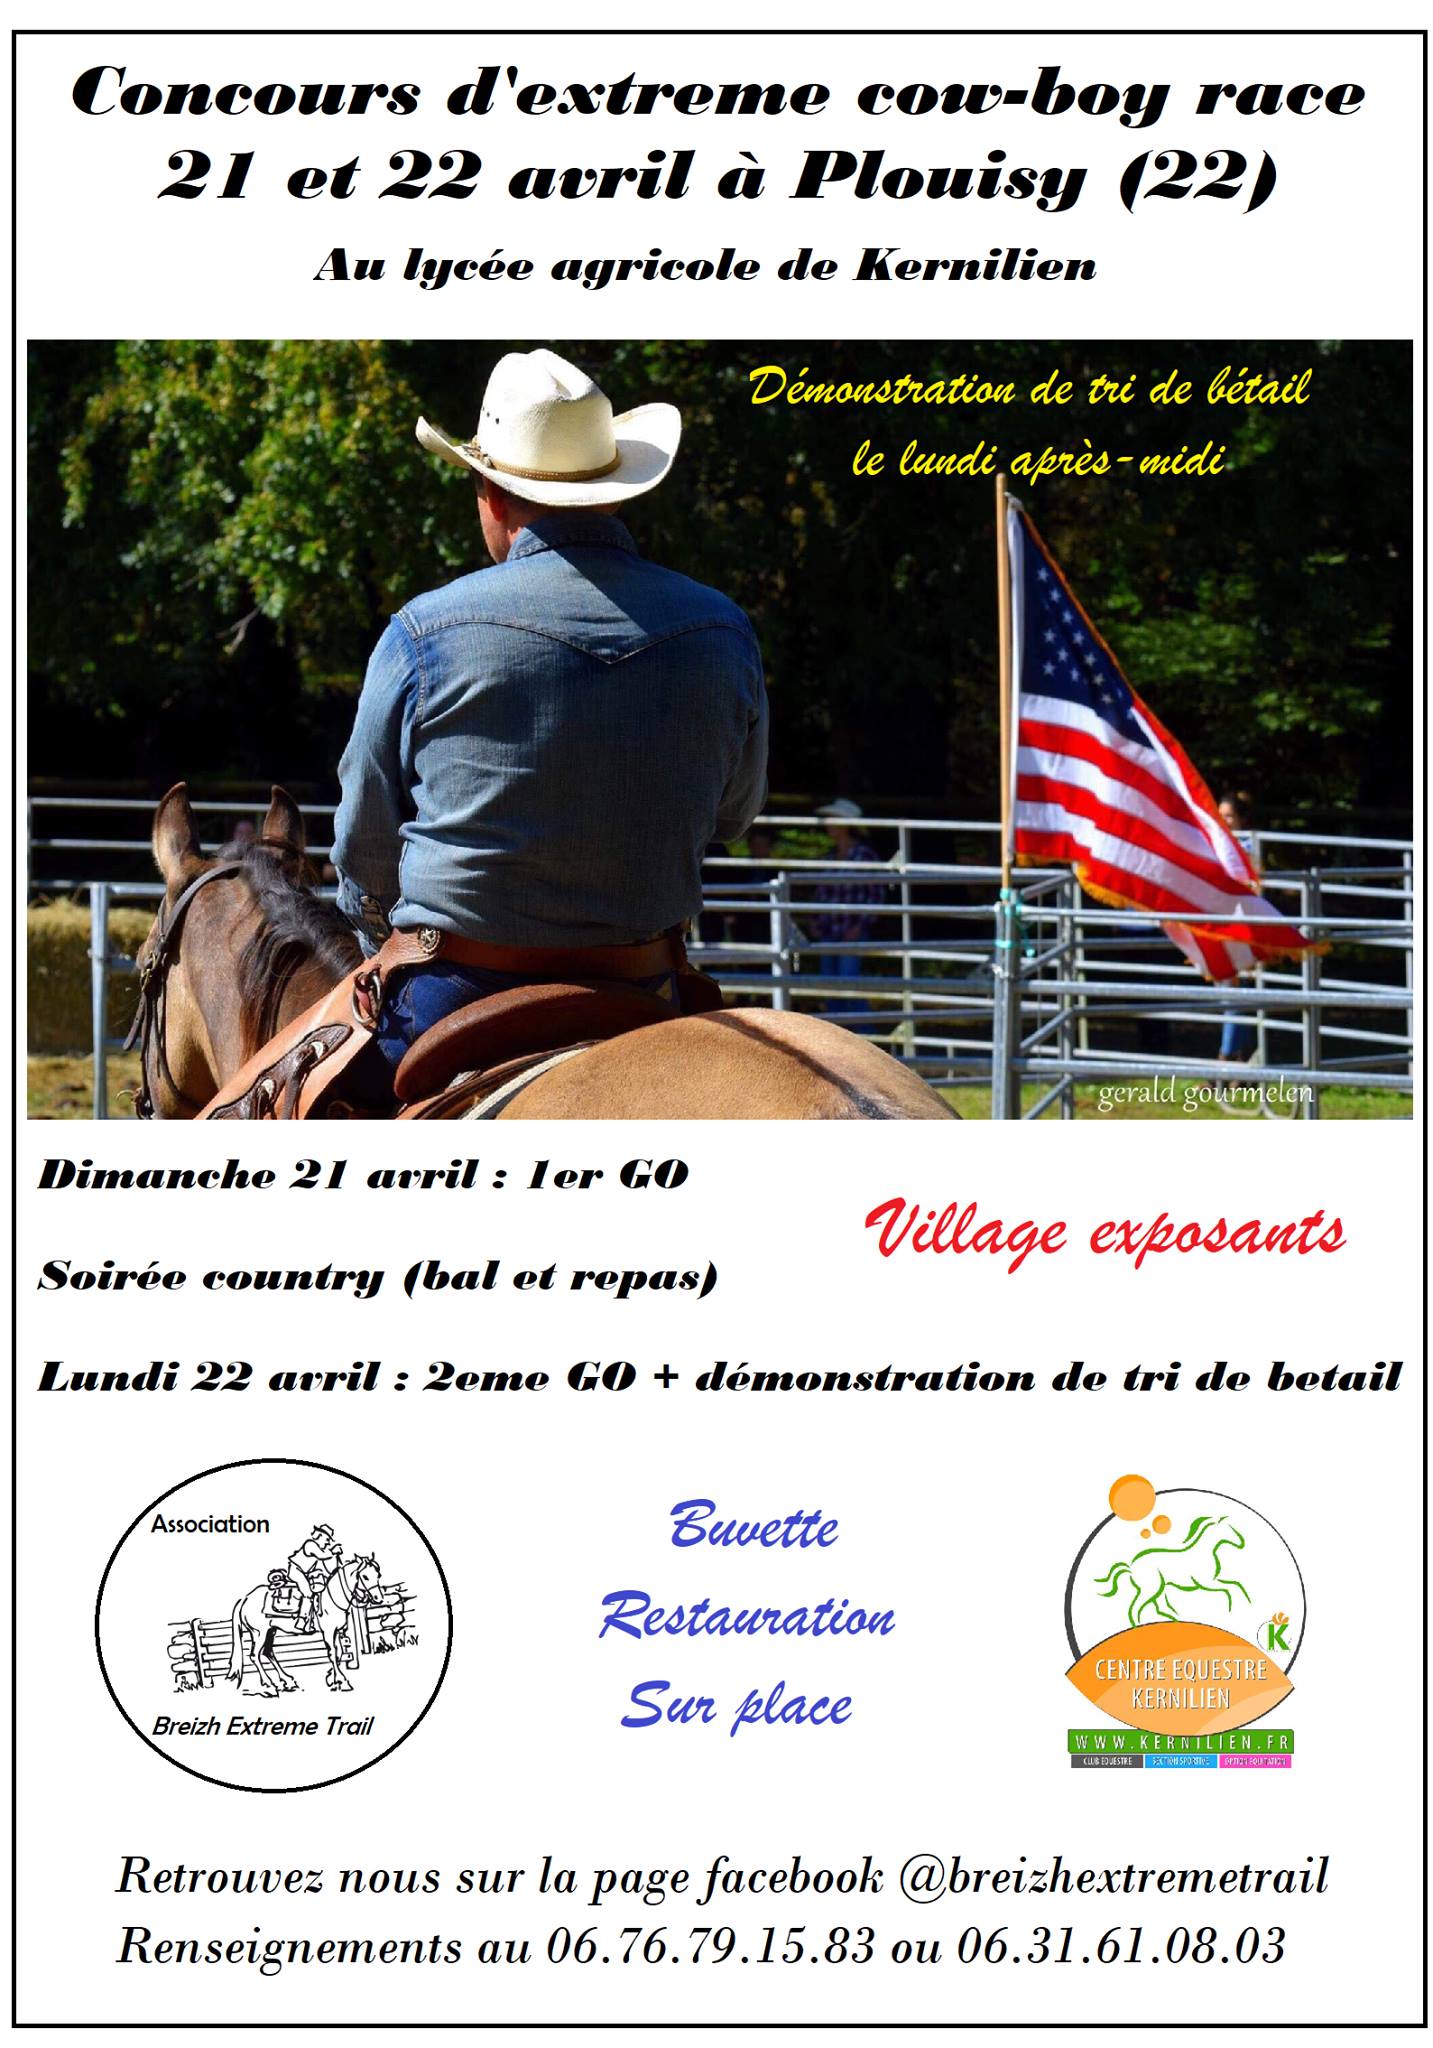 Concours d'extreme cow-boy race 21 et 22 avril à Plouisy